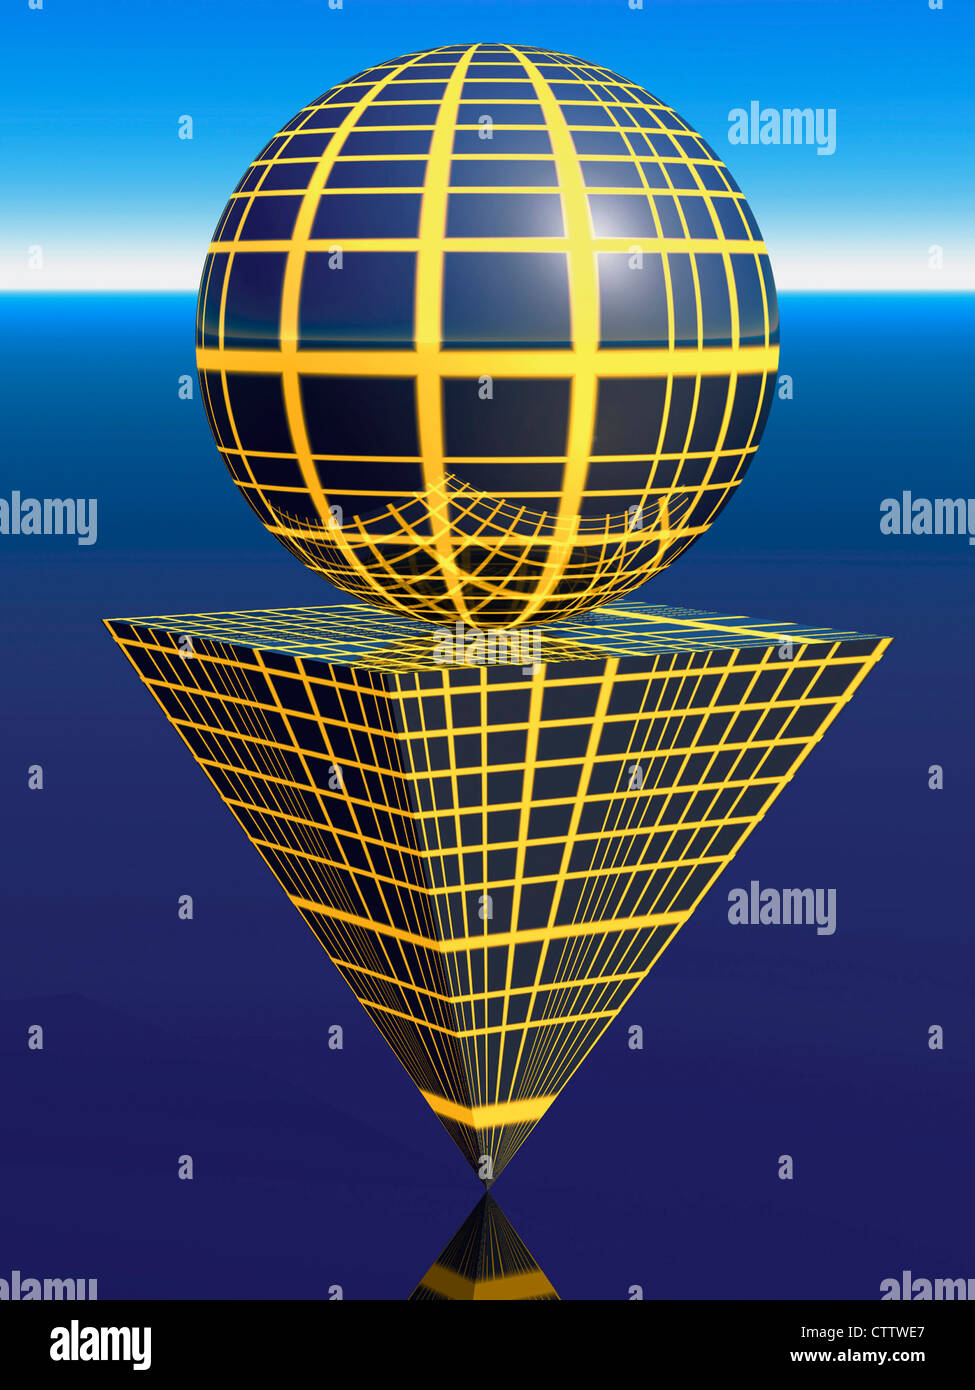 Spher sur une plate-forme qui est la base d'une pyramide à l'envers - Plattform Kugel und aus symbole umgedrehter Pyramide Banque D'Images